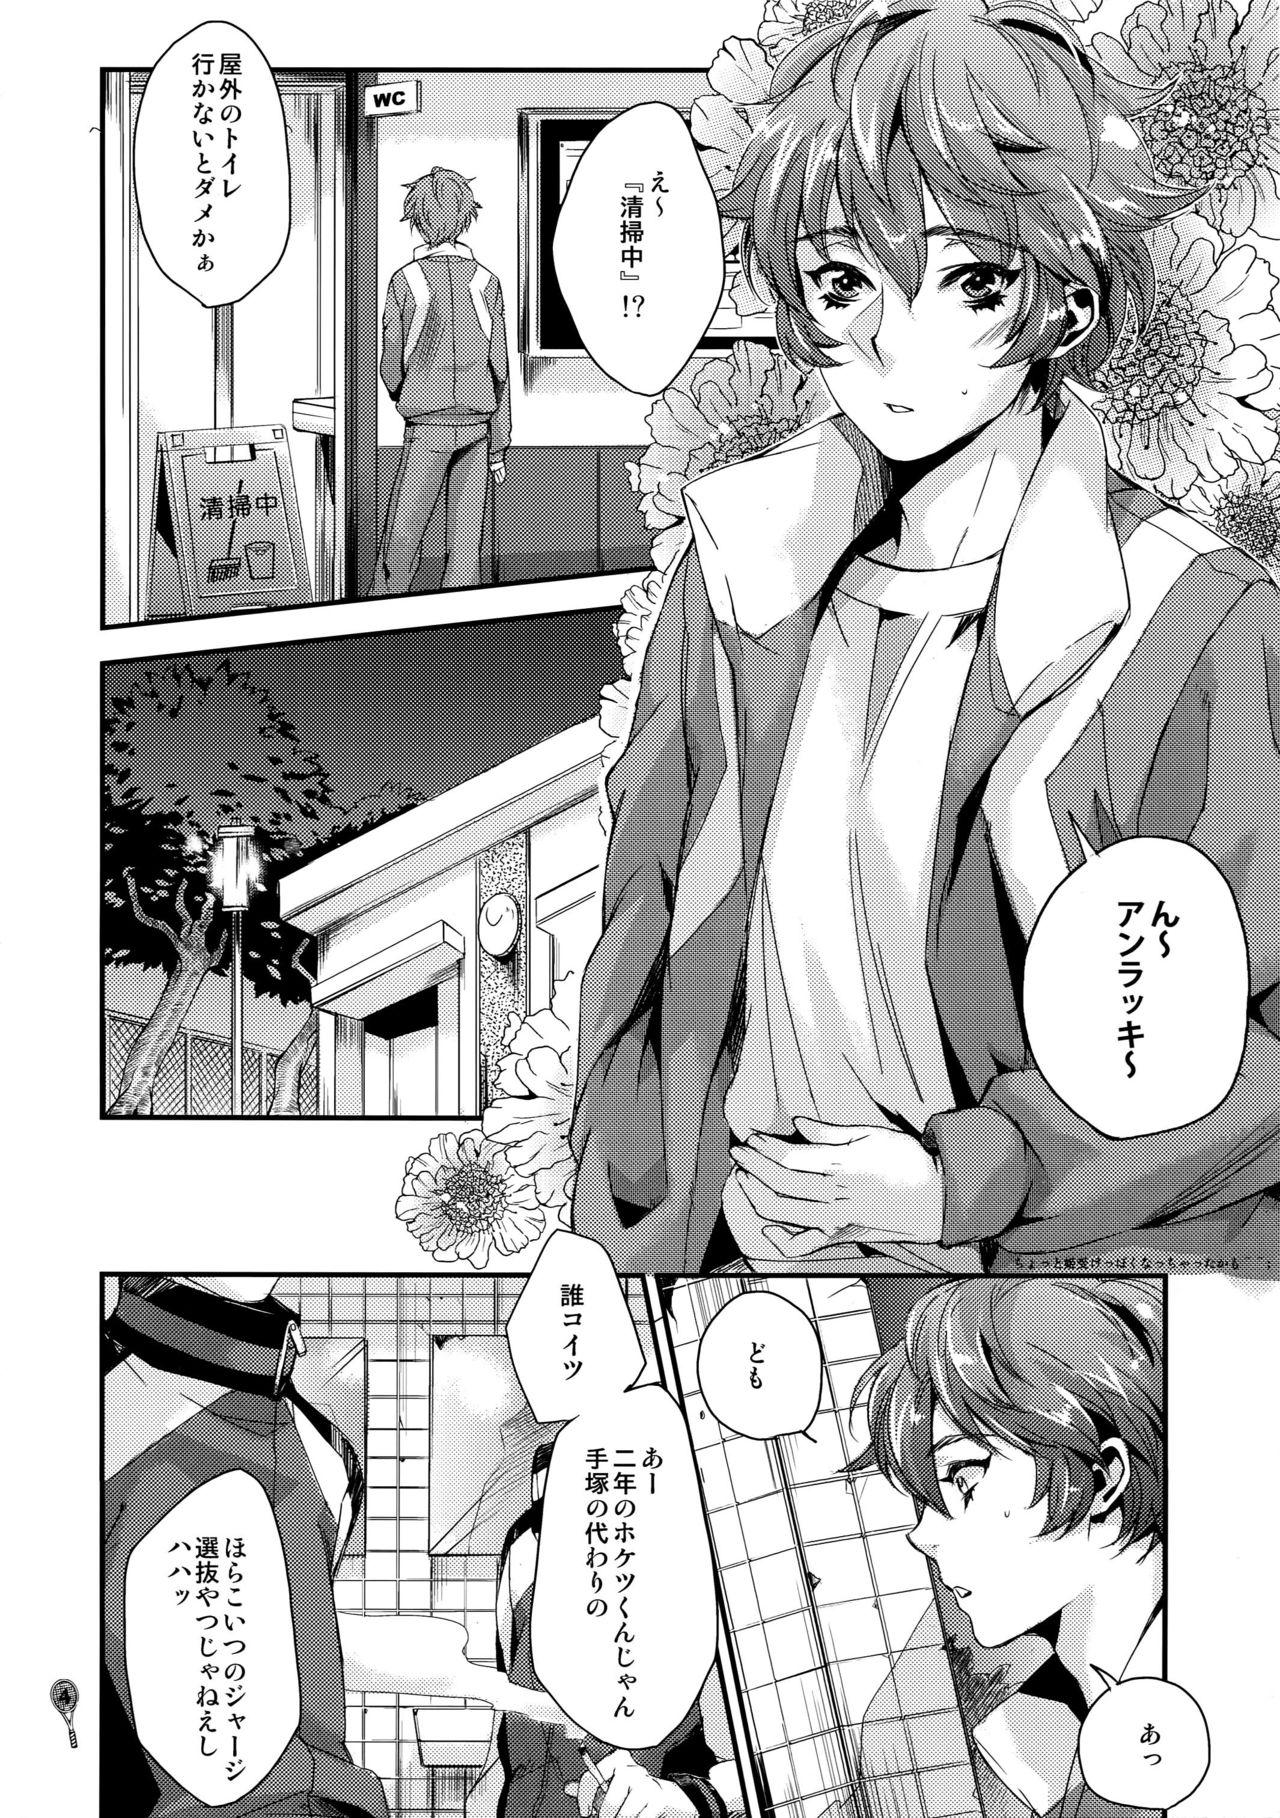 Amigos Hoketsu no Kuse ni Namaiki da - Prince of tennis Bedroom - Page 3